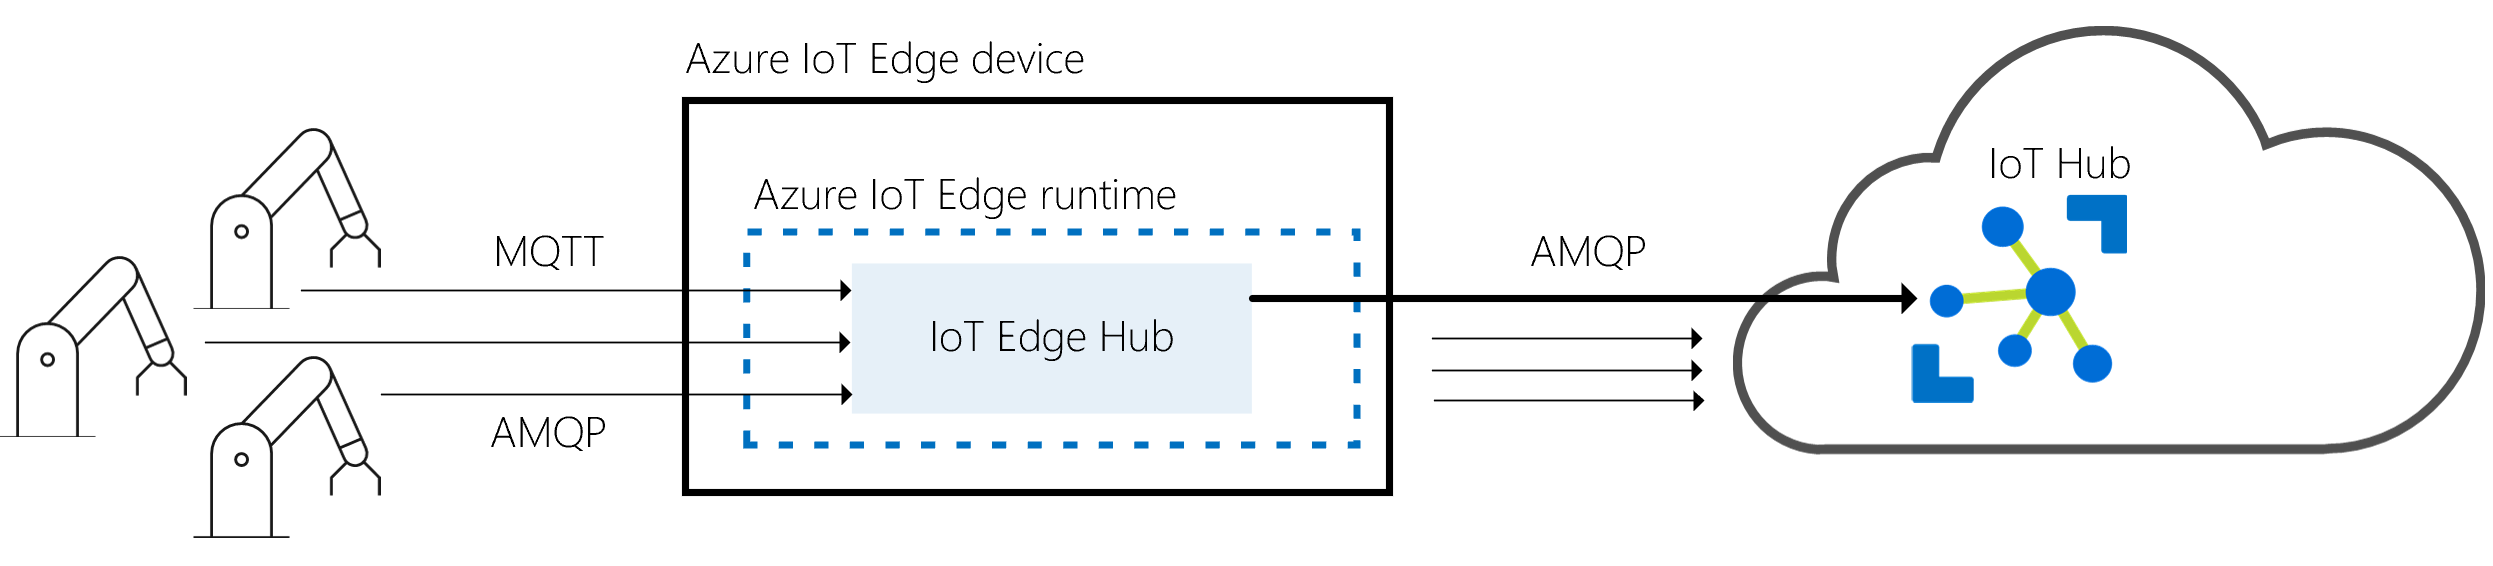 Le hub IoT Edge est une passerelle entre les appareils physiques et IoT Hub